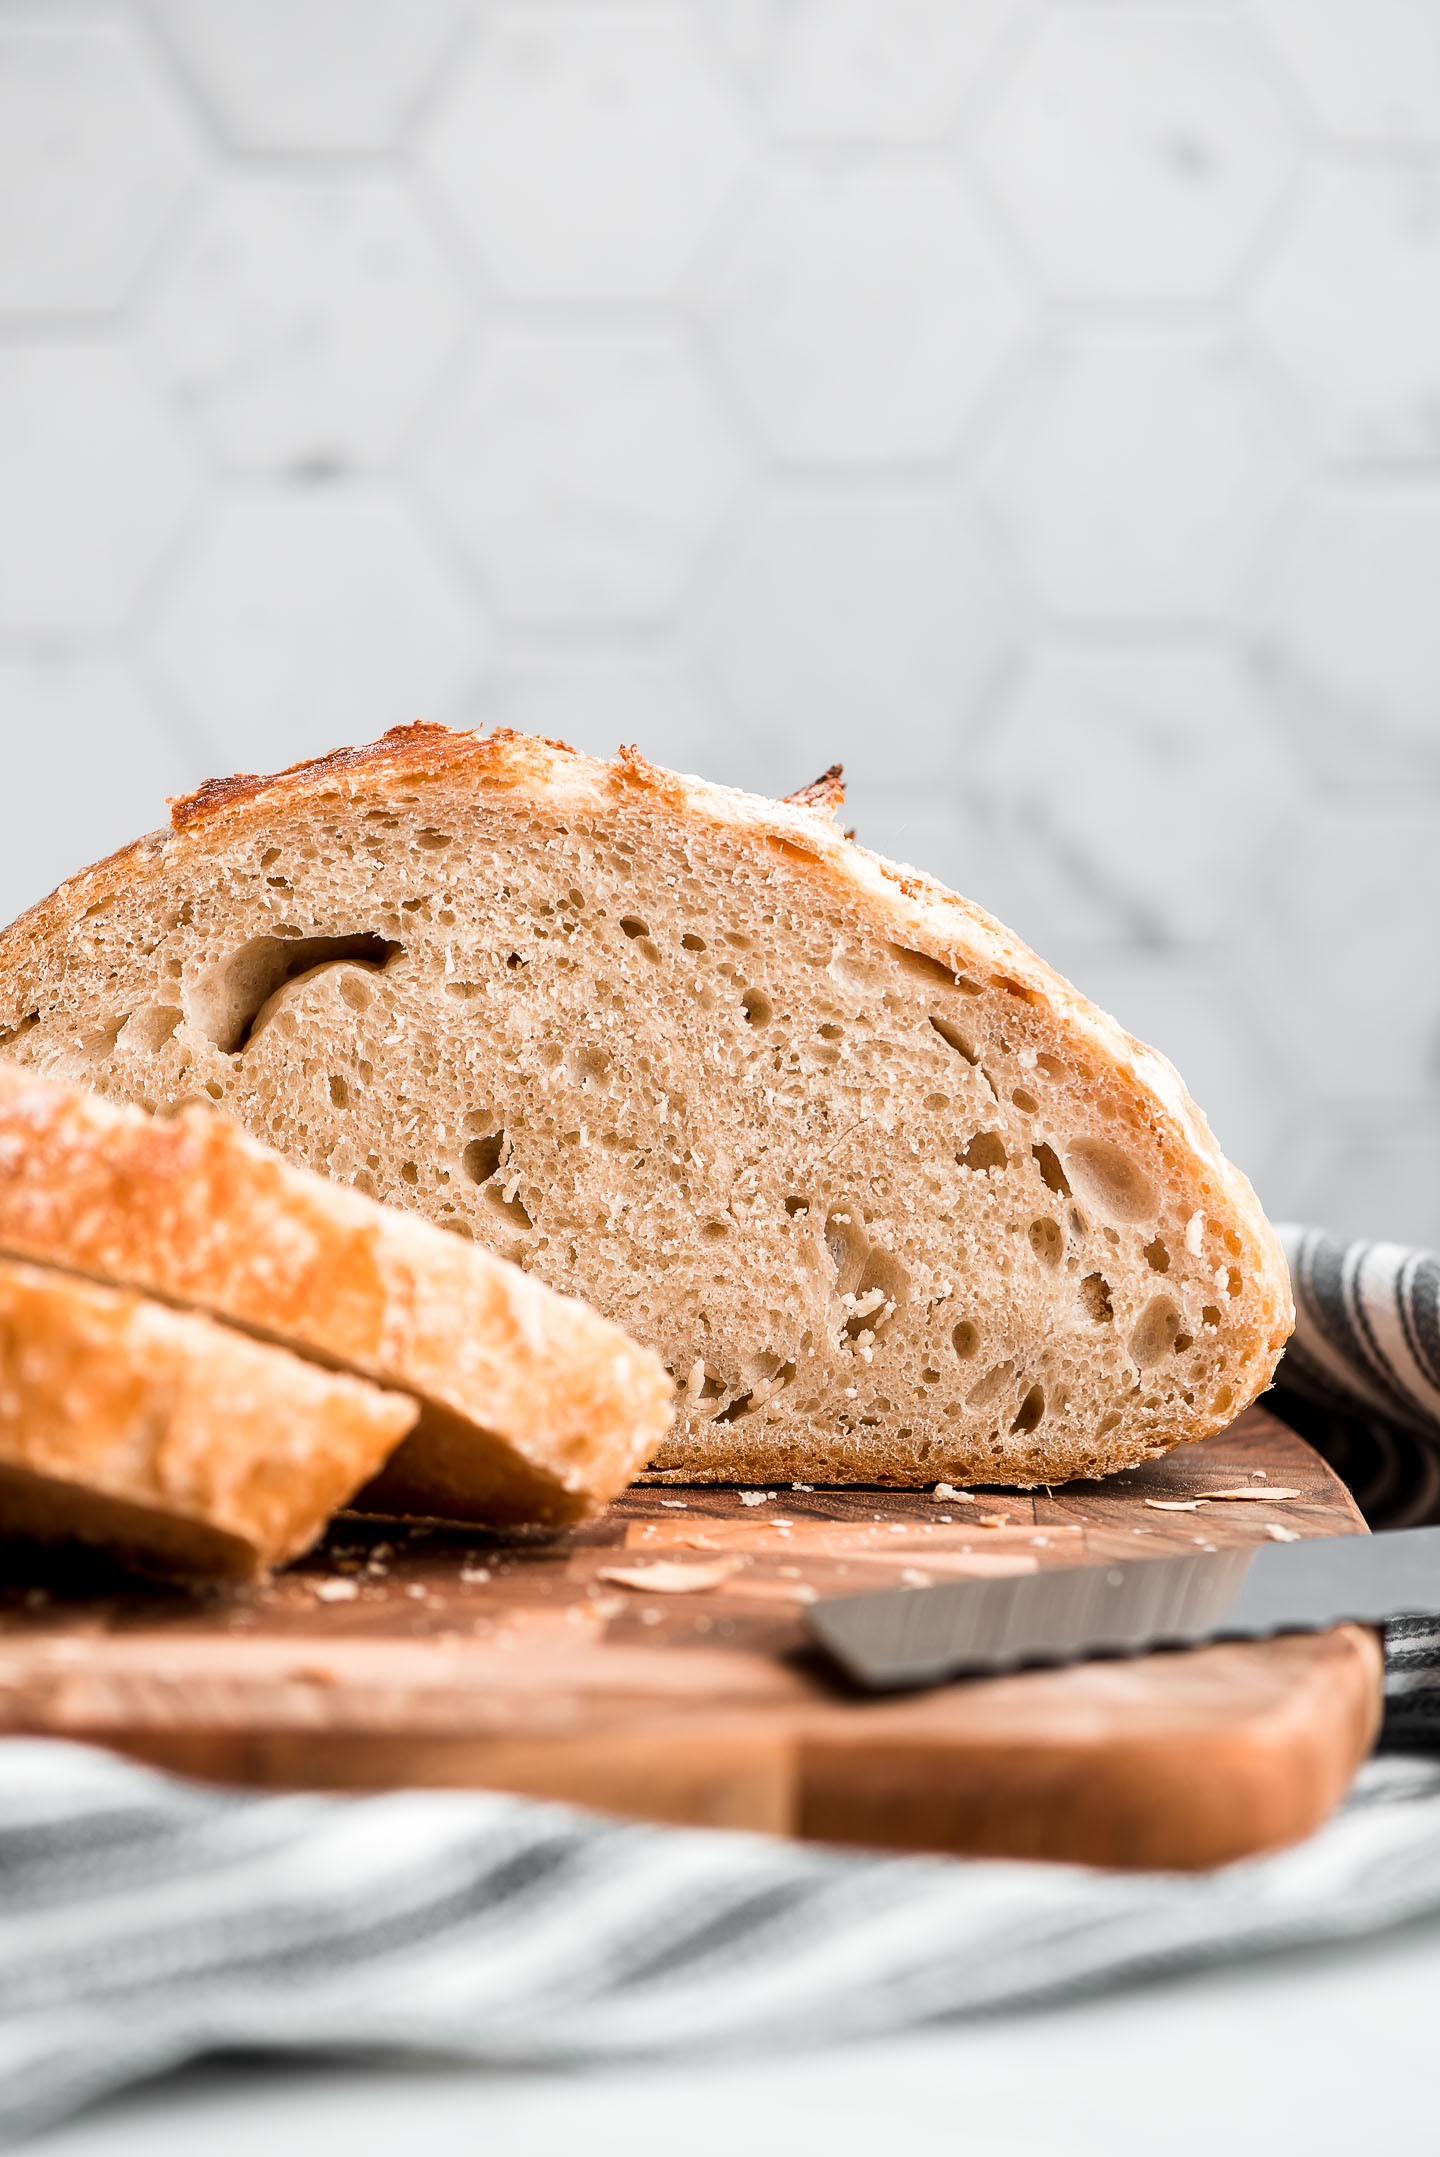 Half a loaf of No Knead artisan bread sitting on a cutting board.